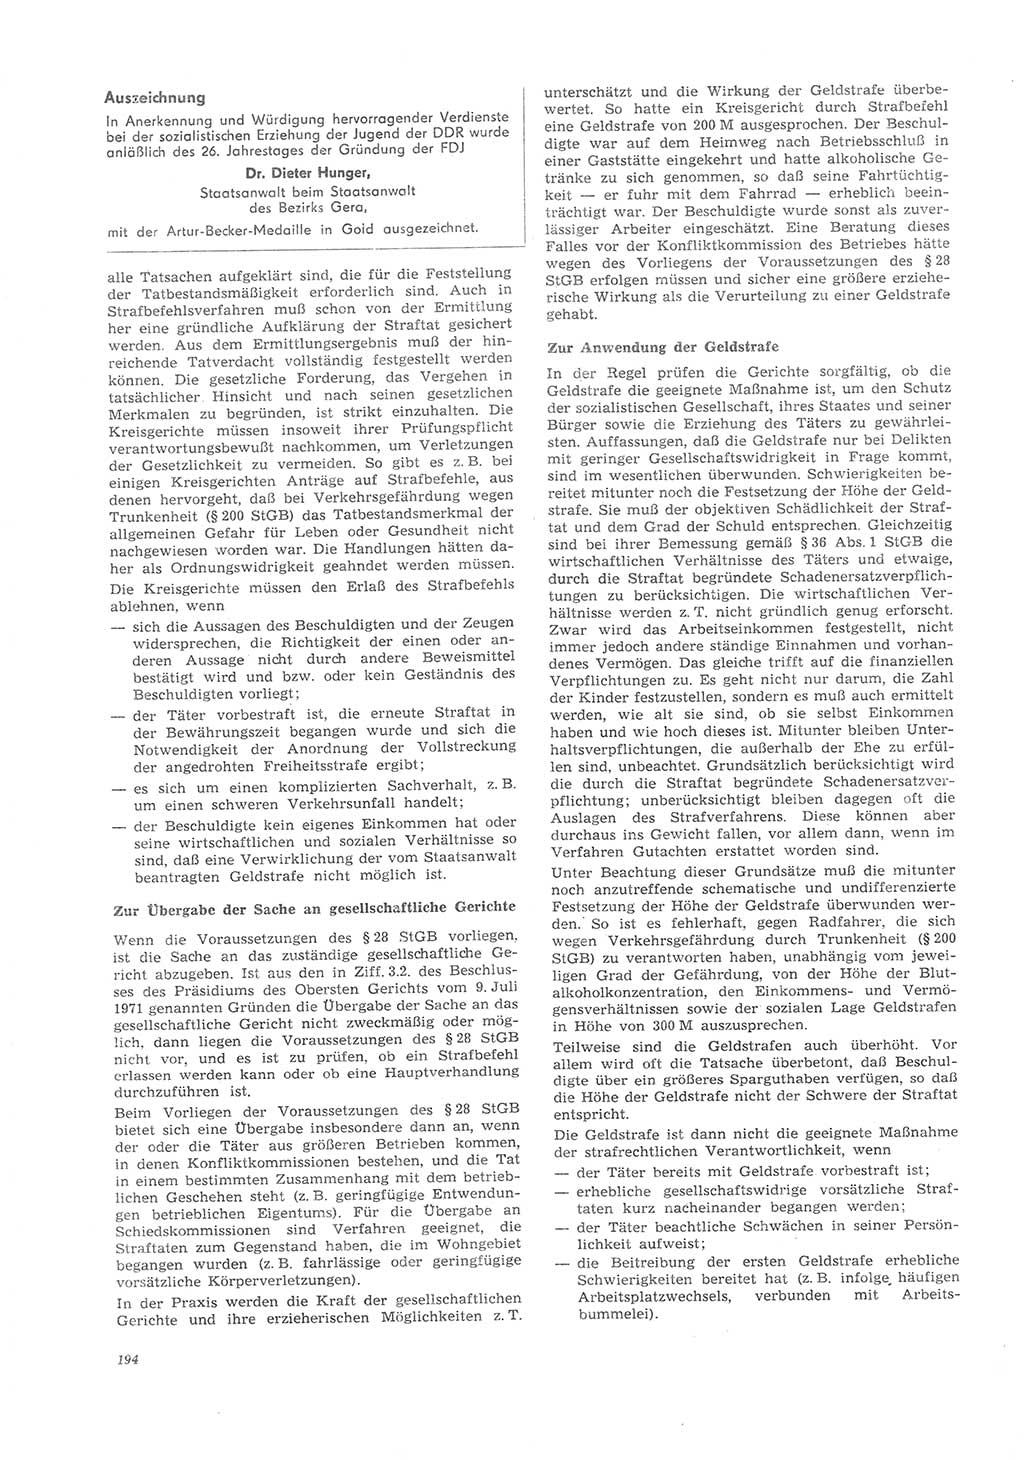 Neue Justiz (NJ), Zeitschrift für Recht und Rechtswissenschaft [Deutsche Demokratische Republik (DDR)], 26. Jahrgang 1972, Seite 194 (NJ DDR 1972, S. 194)